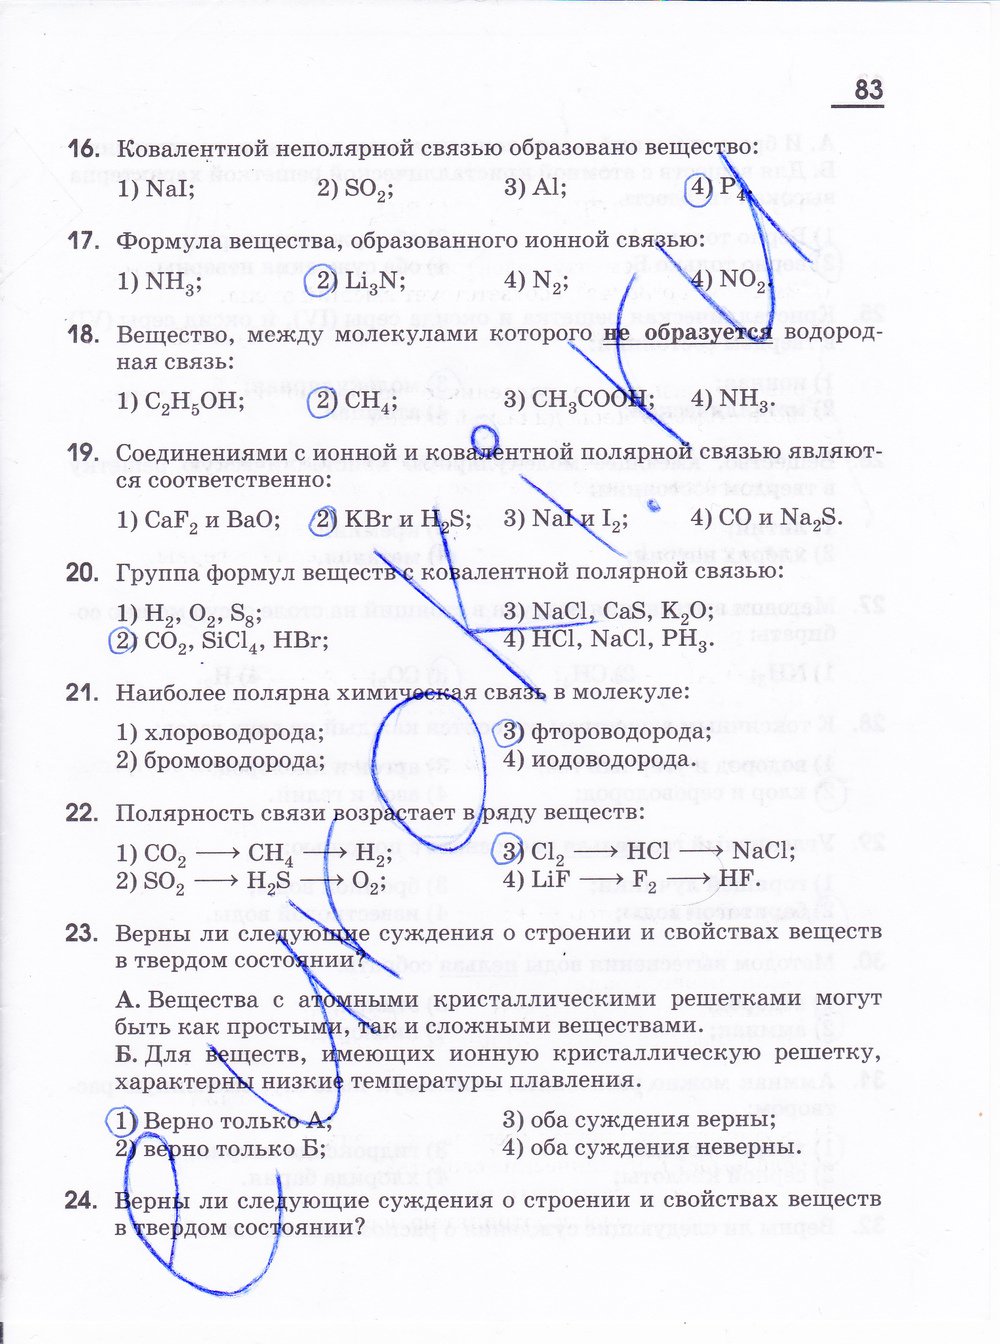 Страница (упражнение) 83 учебника. Ответ на вопрос упражнения 83 ГДЗ решебник по химии 11 класс Габриелян, Лысова